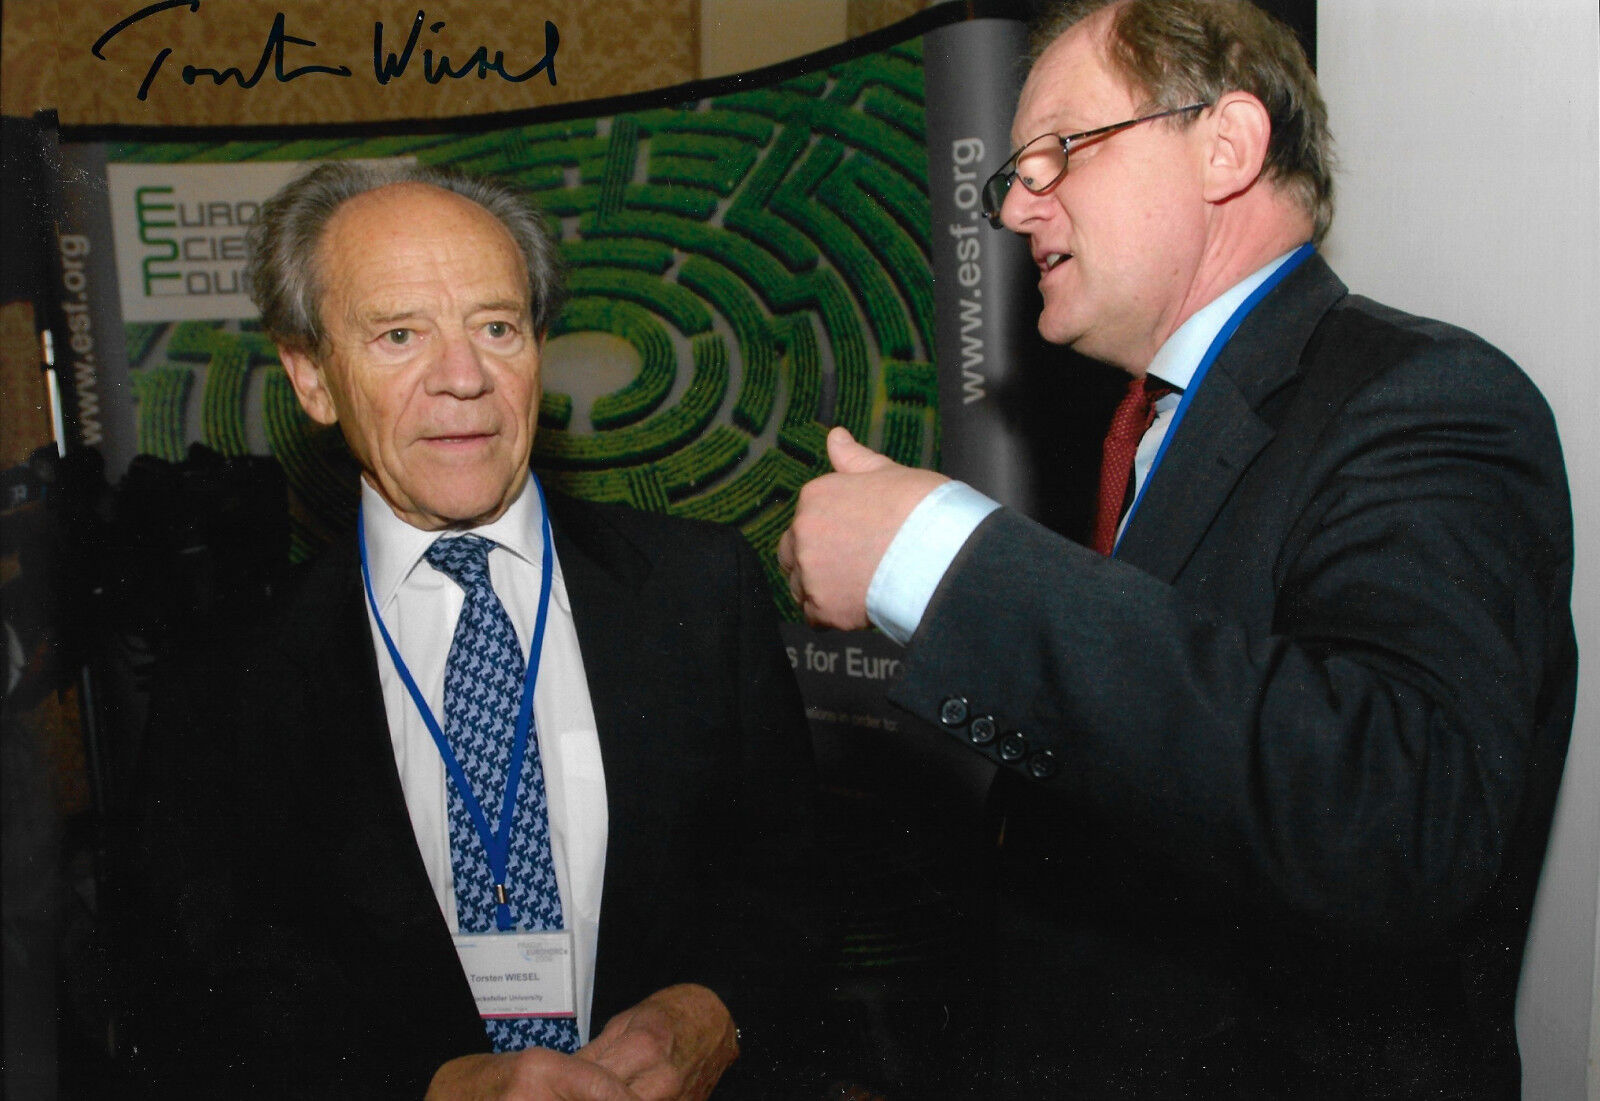 Torsten Wiesel Nobel Laureate